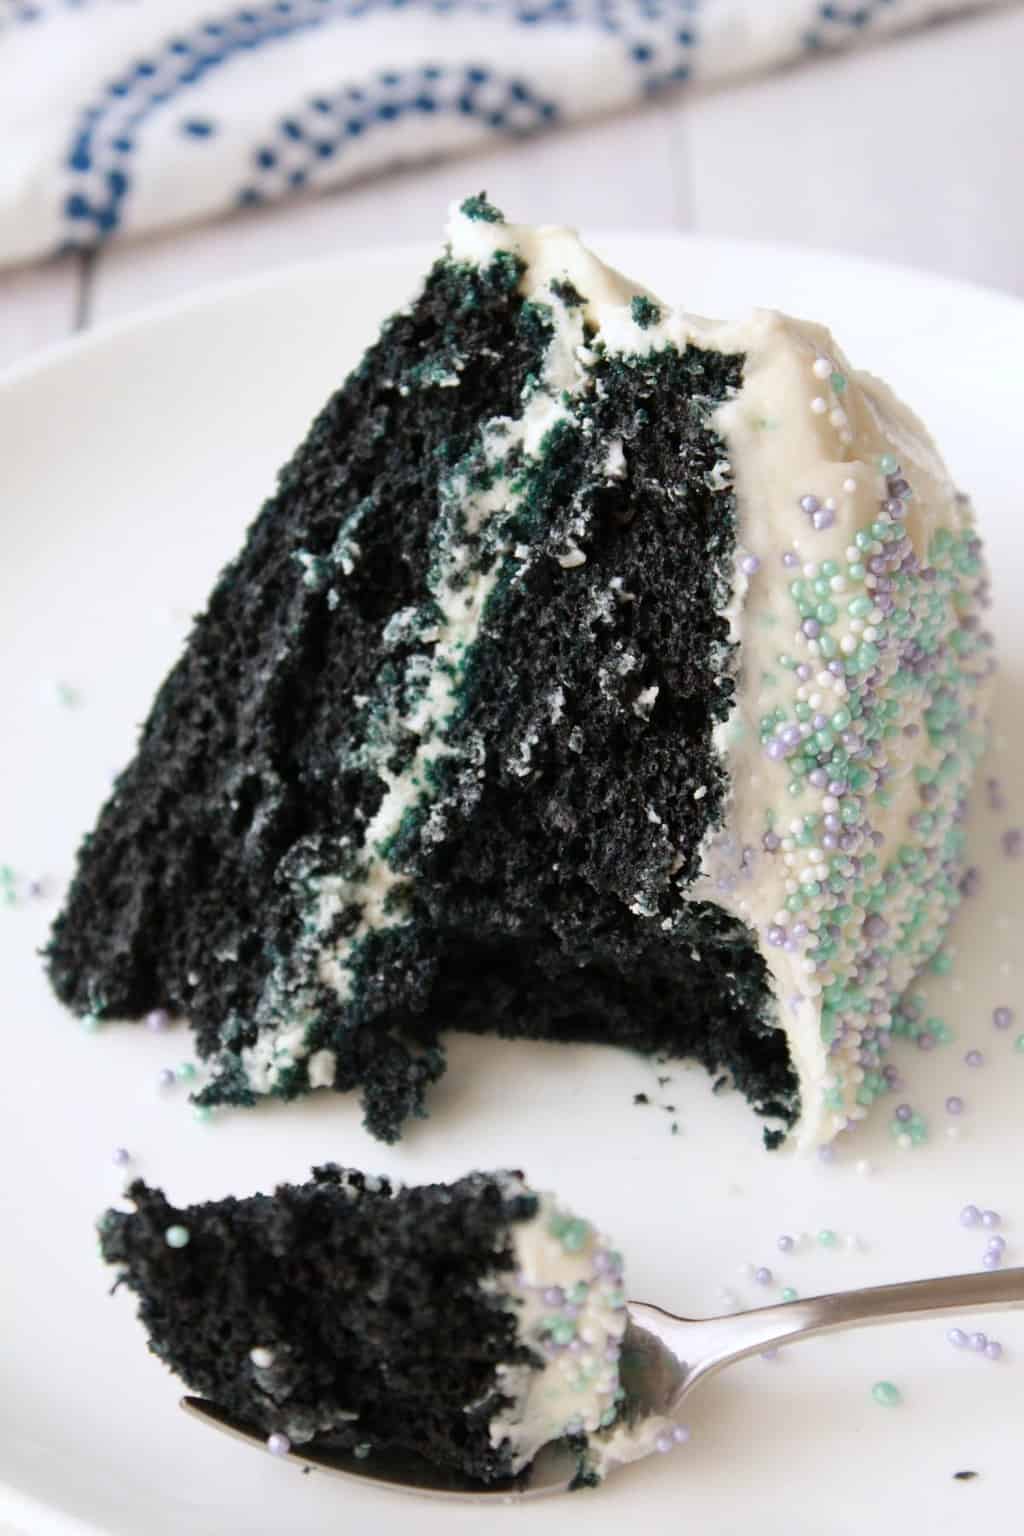 Vegan Blue Velvet Cake. Midnight blue cake frosted with vegan vanilla frosting. Simple, moist and delicious! #vegan #lovingitvegan #dessert #cake #bluevelvet